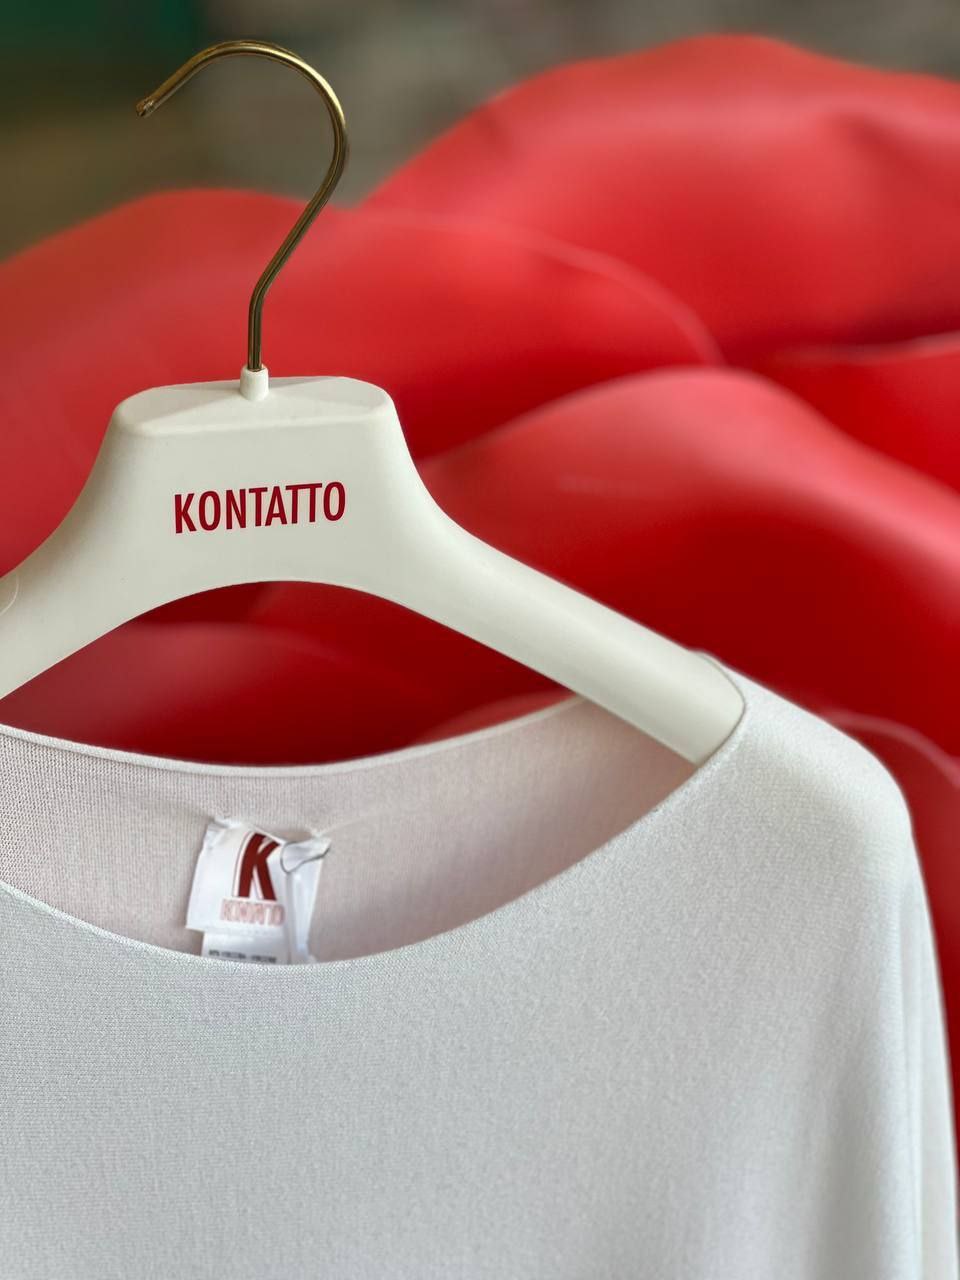 Итальянская одежда, бренд Kontatto, арт. 73267758